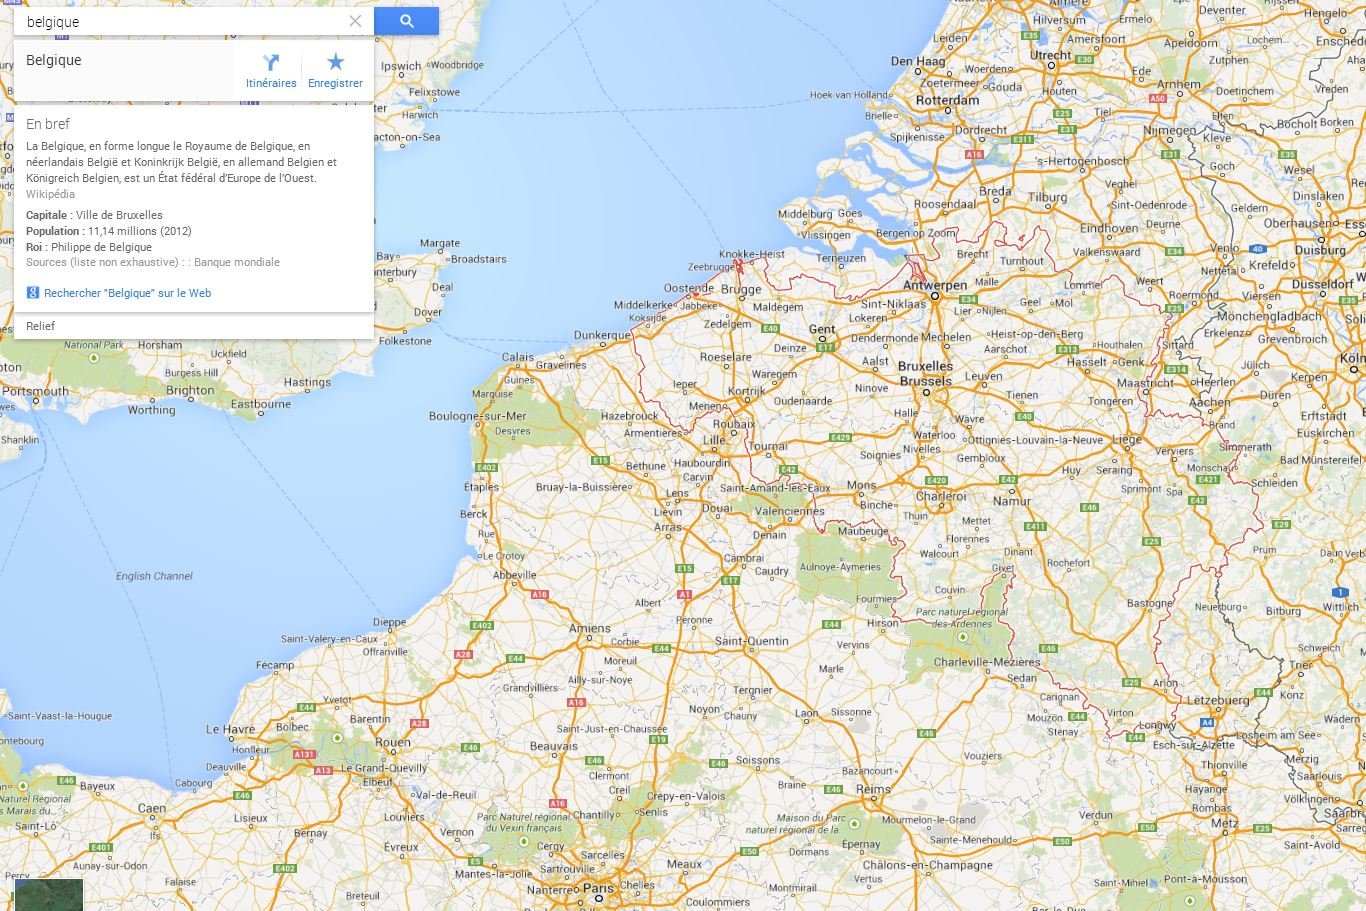 belgique-google-maps-knowledge-graph